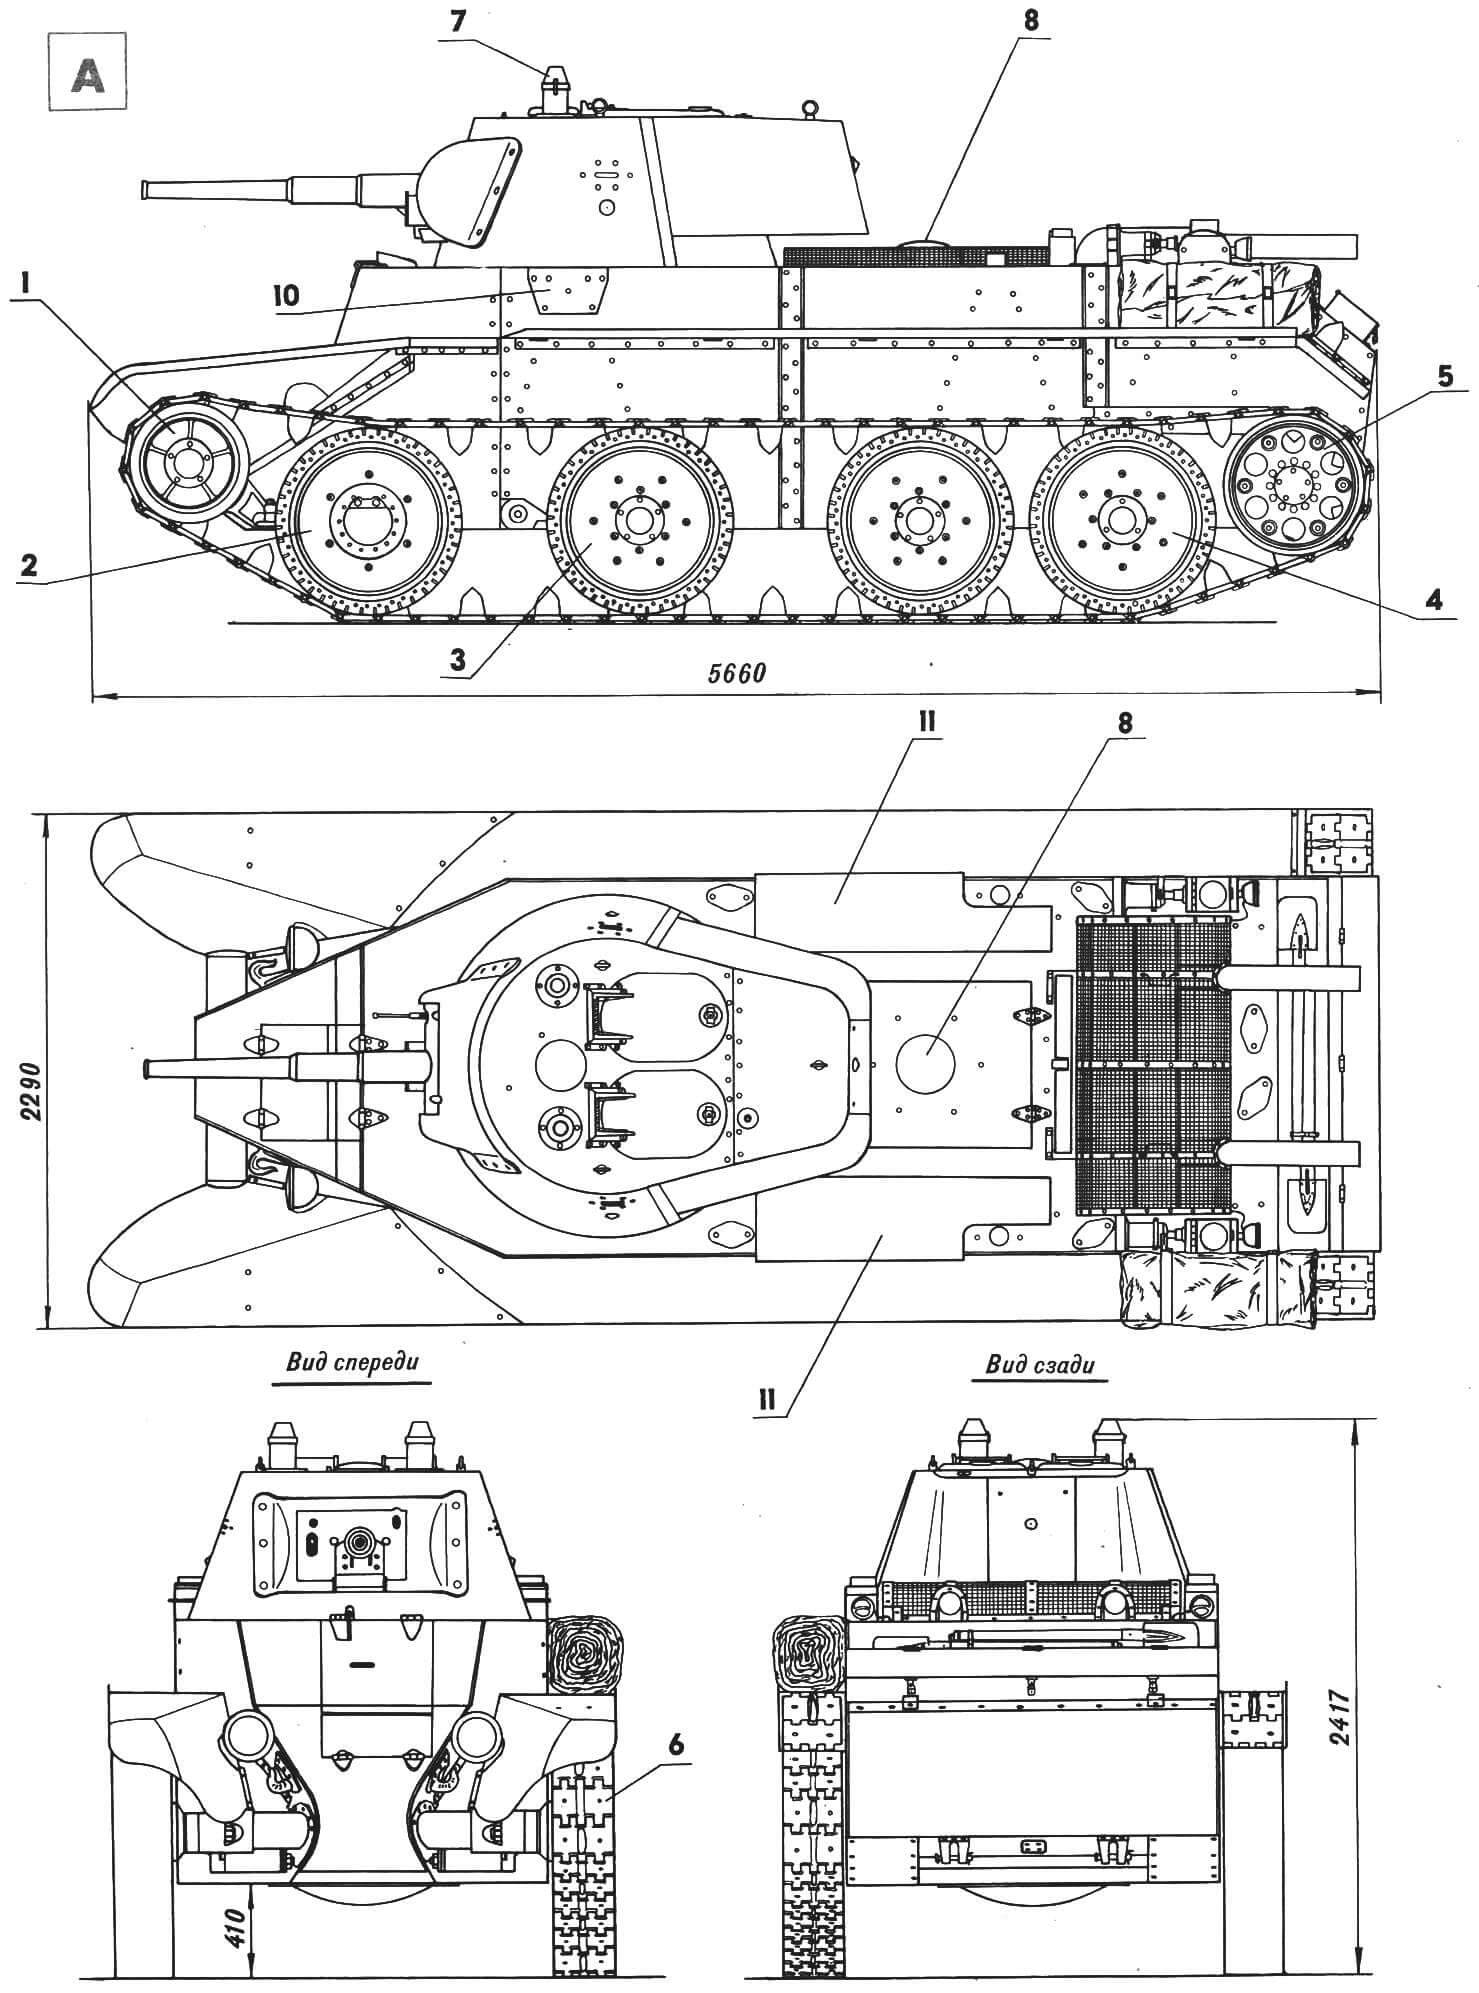 Колесно-гусеничный танк БТ-7